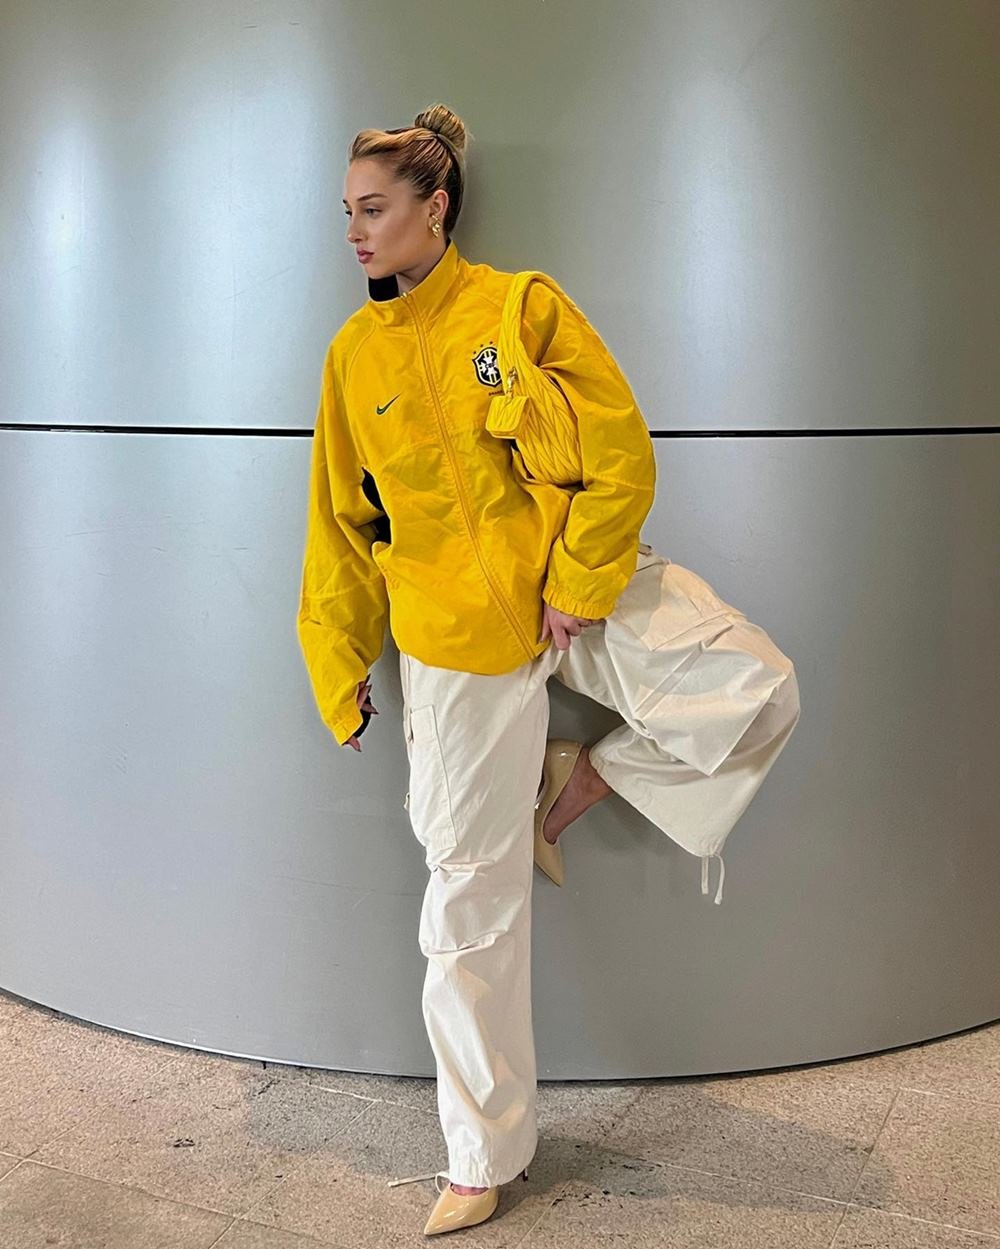 A influencer Malu Borges, uma mulher branca, jovem e loira, posando para foto em uma parede cinza. Ela usa uma calça folgada branca, um salto alto bege, uma jaqueta amarela com o símbolo da CBF e um bolsa, também amarela, da marca Miu Miu.